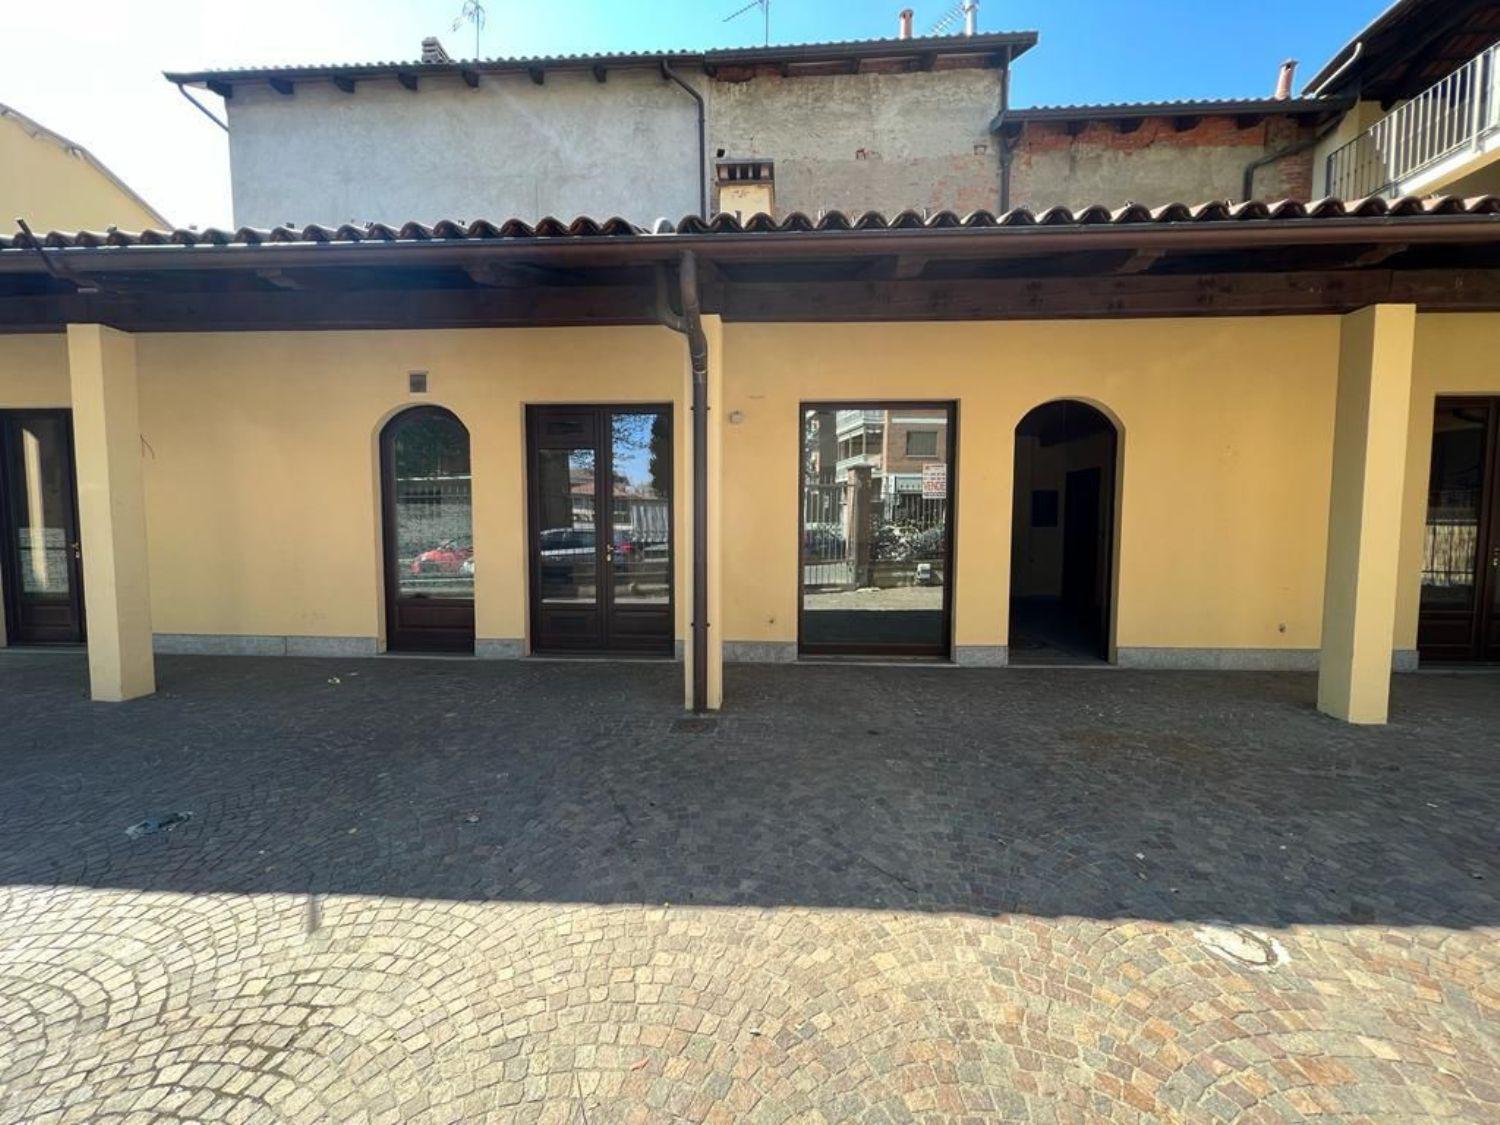 Immobile Commerciale in affitto a Ciriè, 1 locali, prezzo € 1.500 | CambioCasa.it